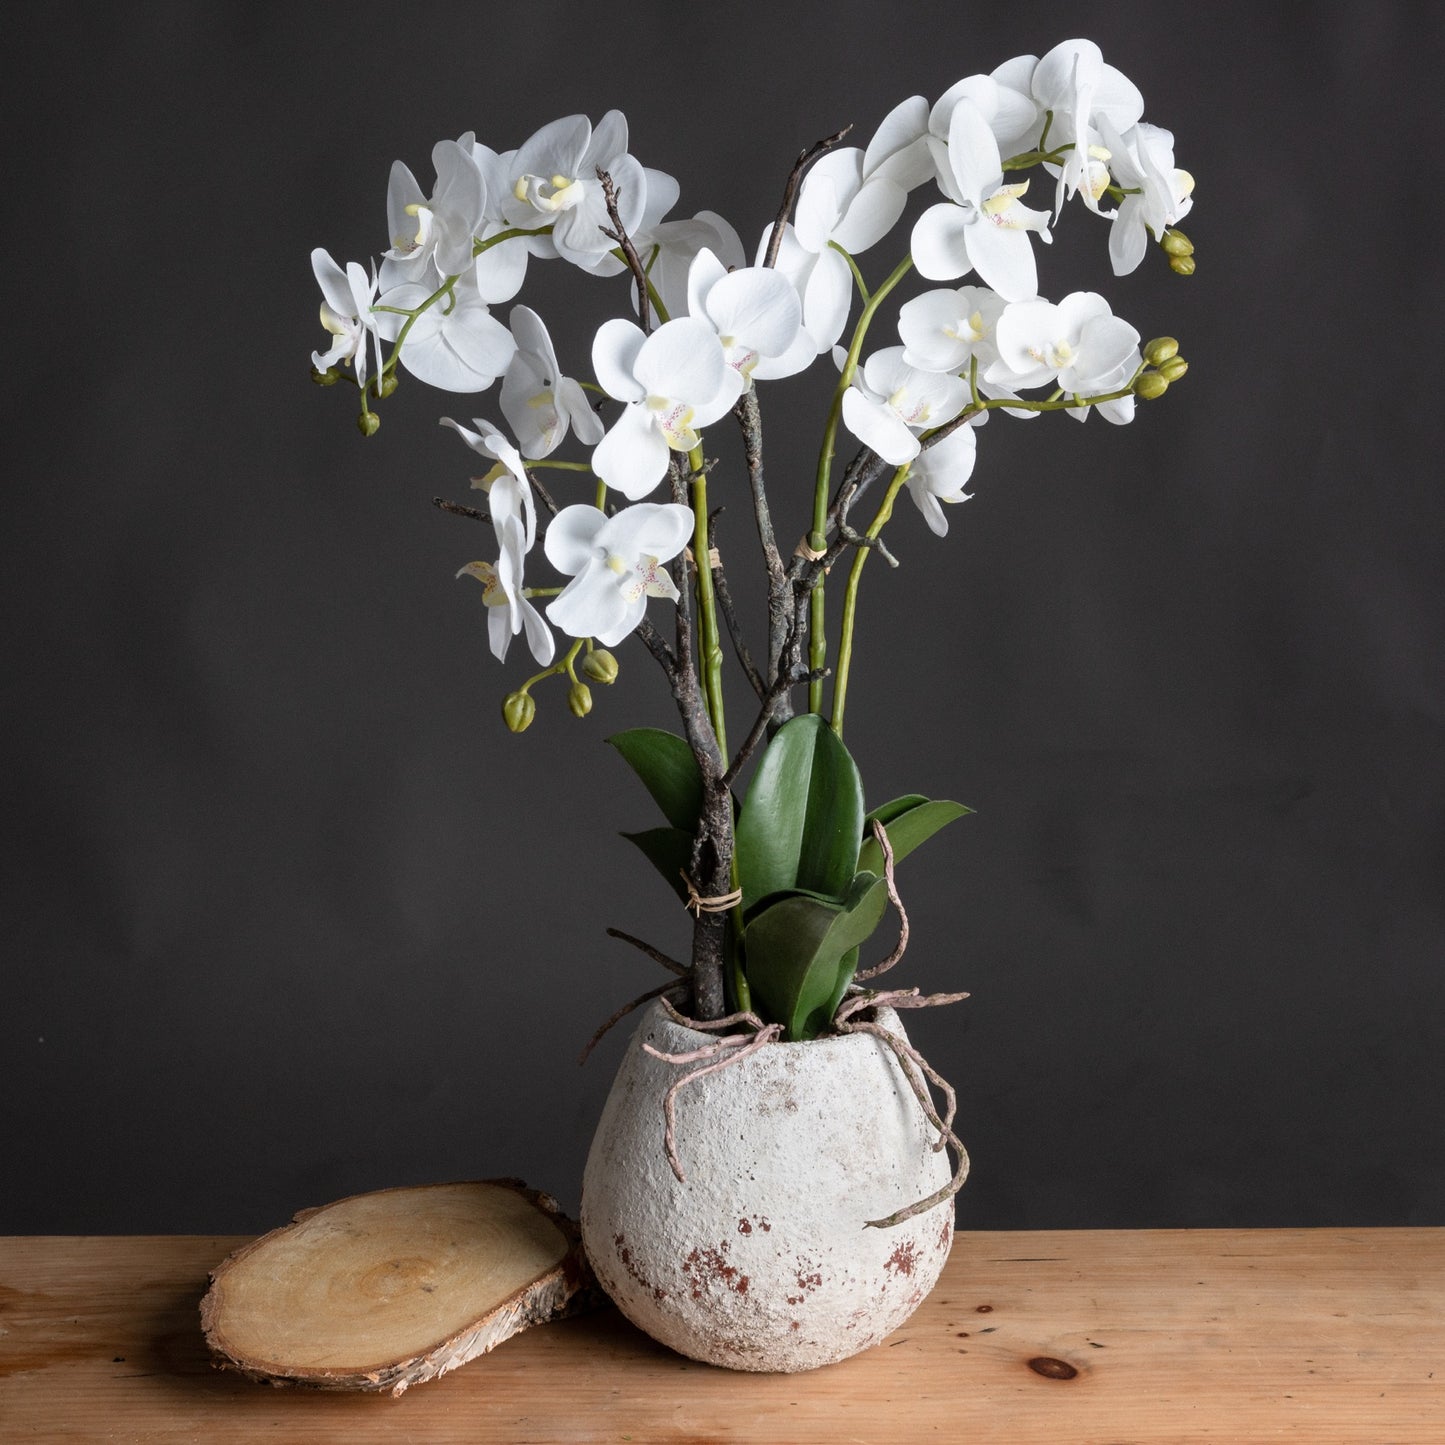 Orchid Antique Stone Pot